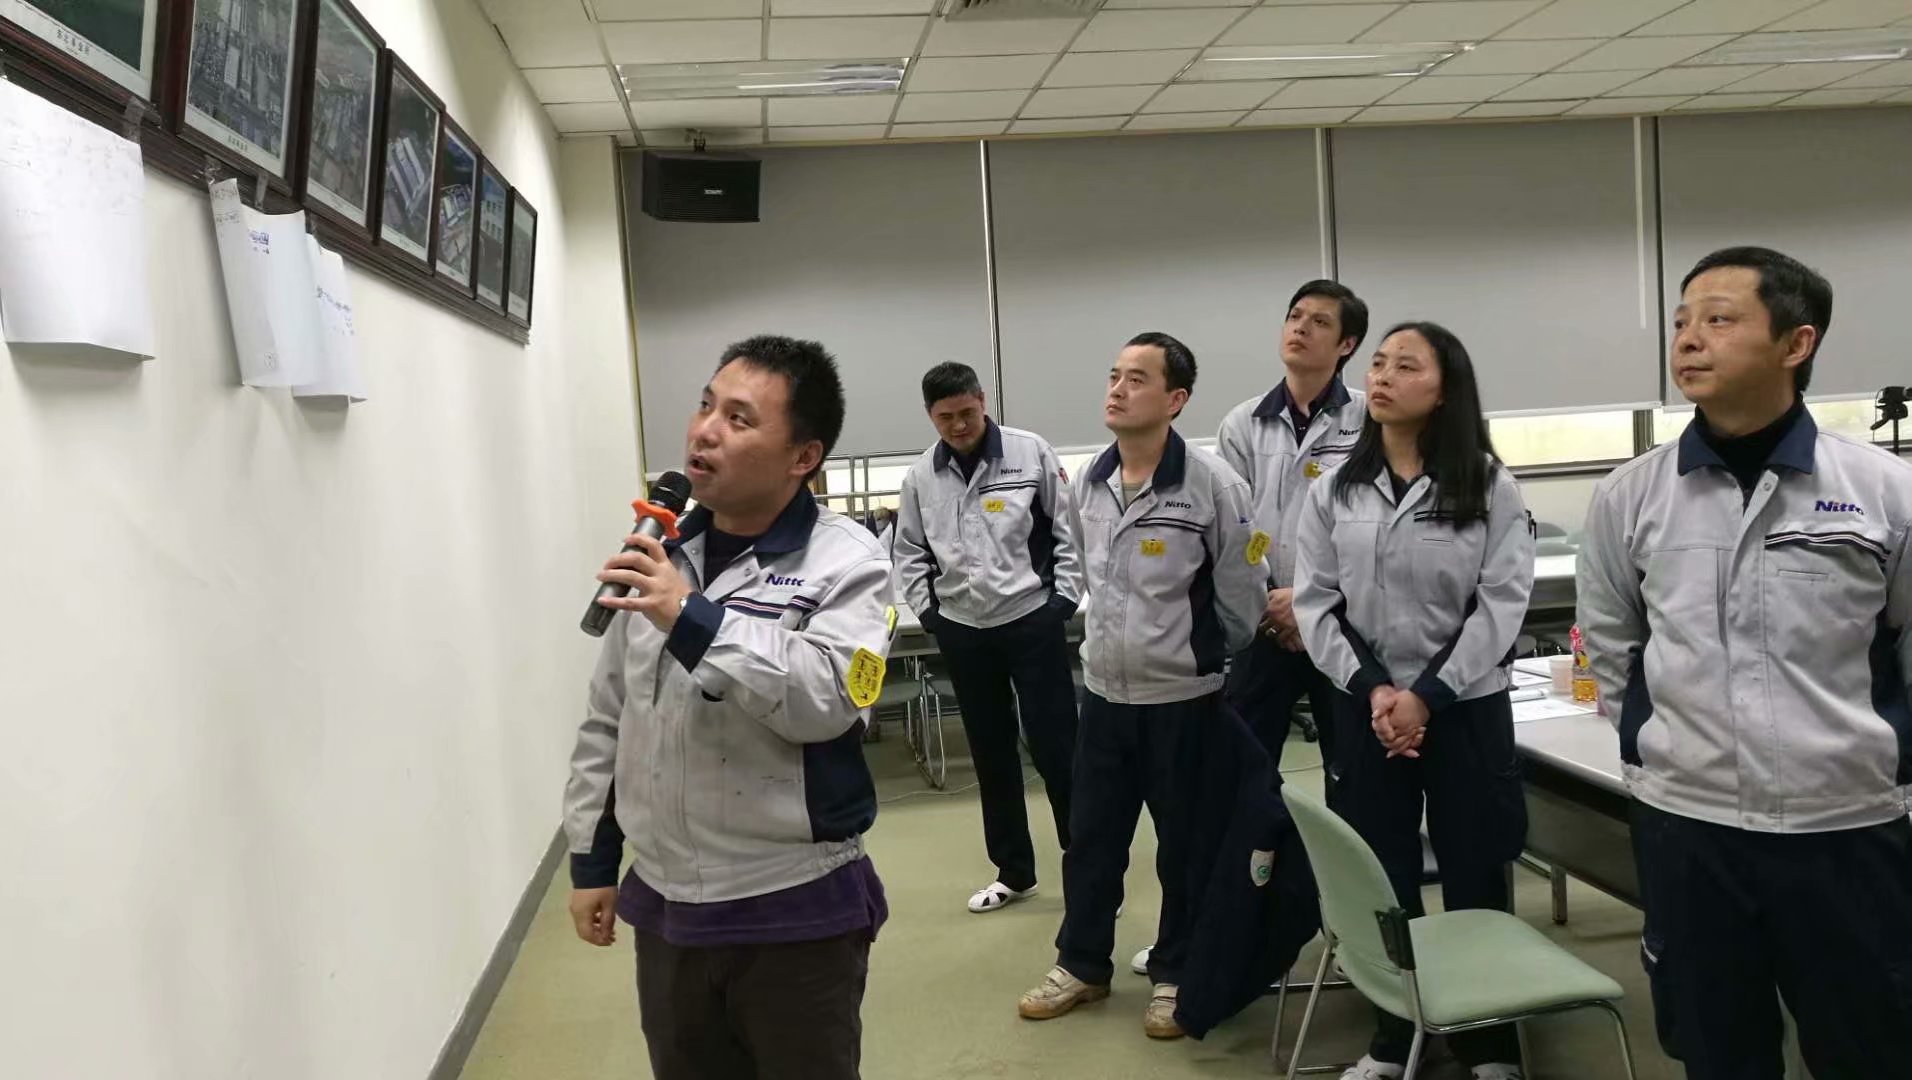 现场日东电工上海松江有限公司基层团队协作与高效沟通技巧第二